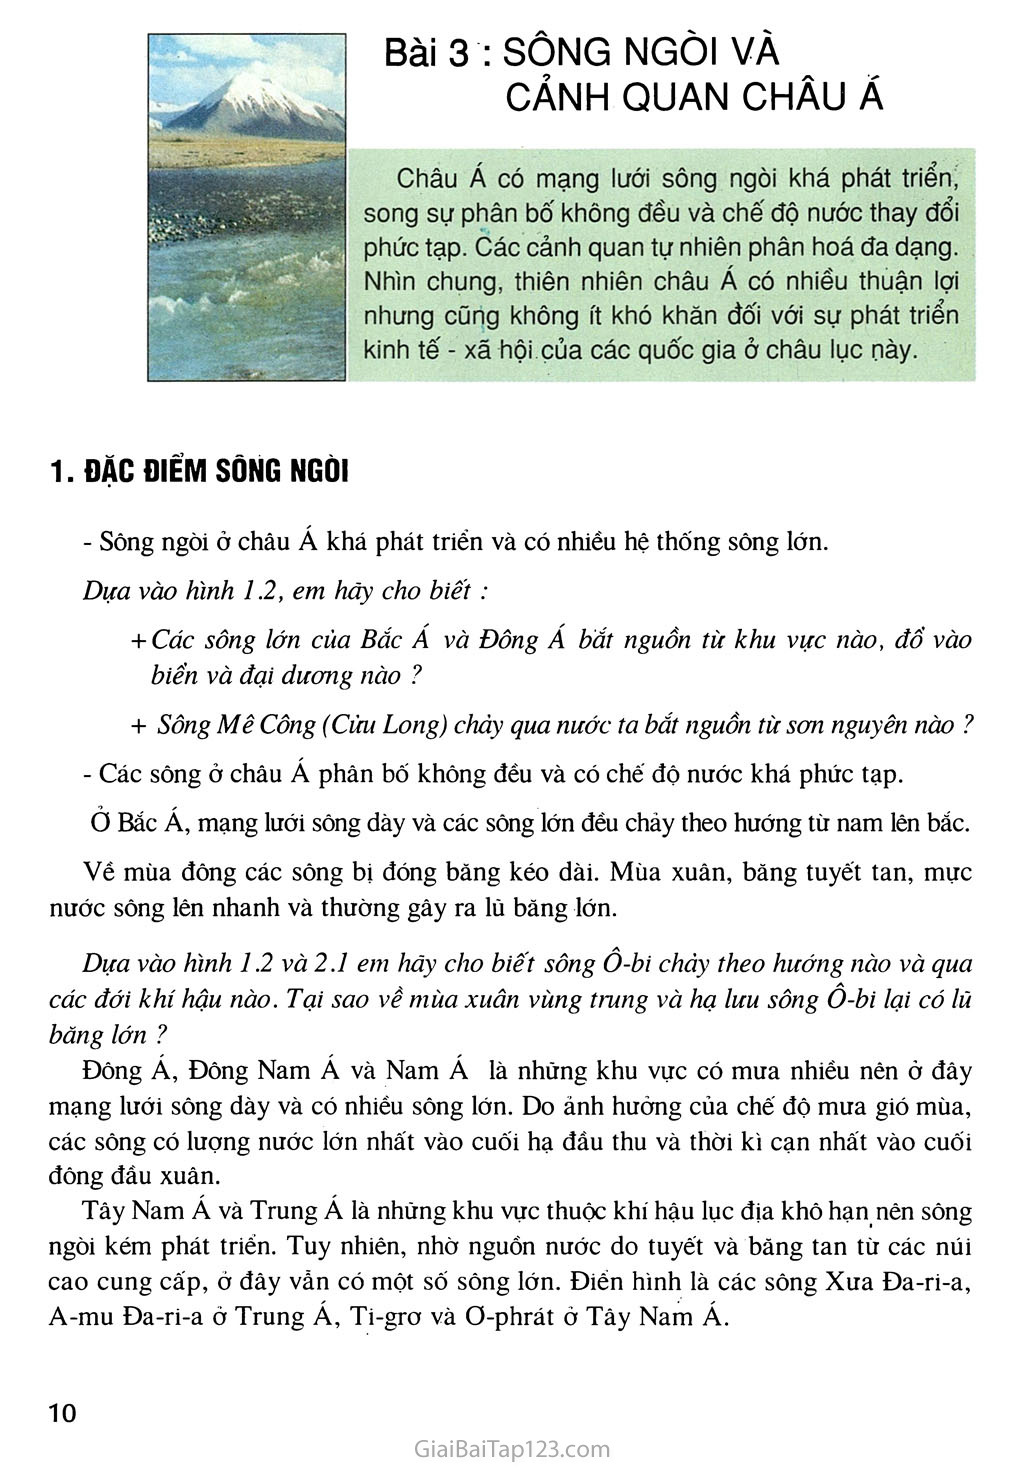 Bài 3. Sông ngòi và cành quan châu Á trang 1